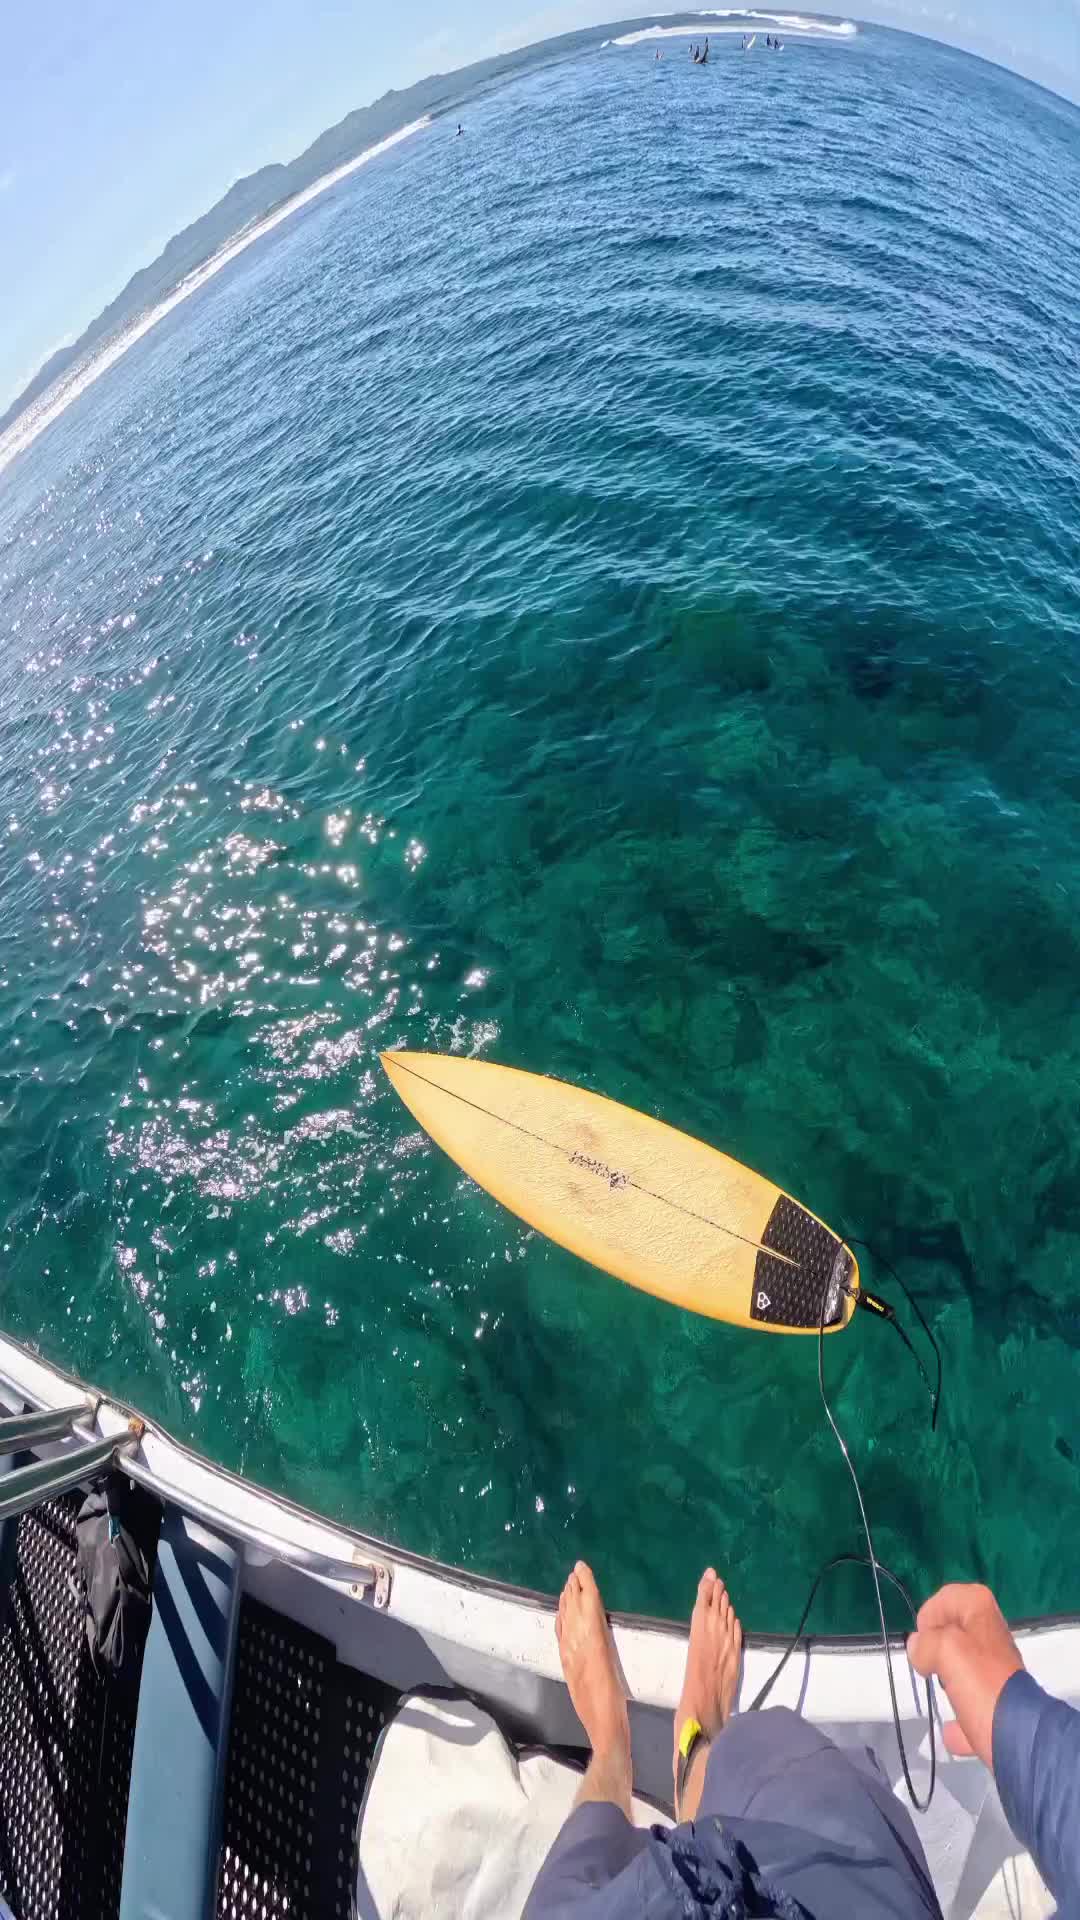 Effortless Speed Surfing in Fiji with 6’0 Surfboard